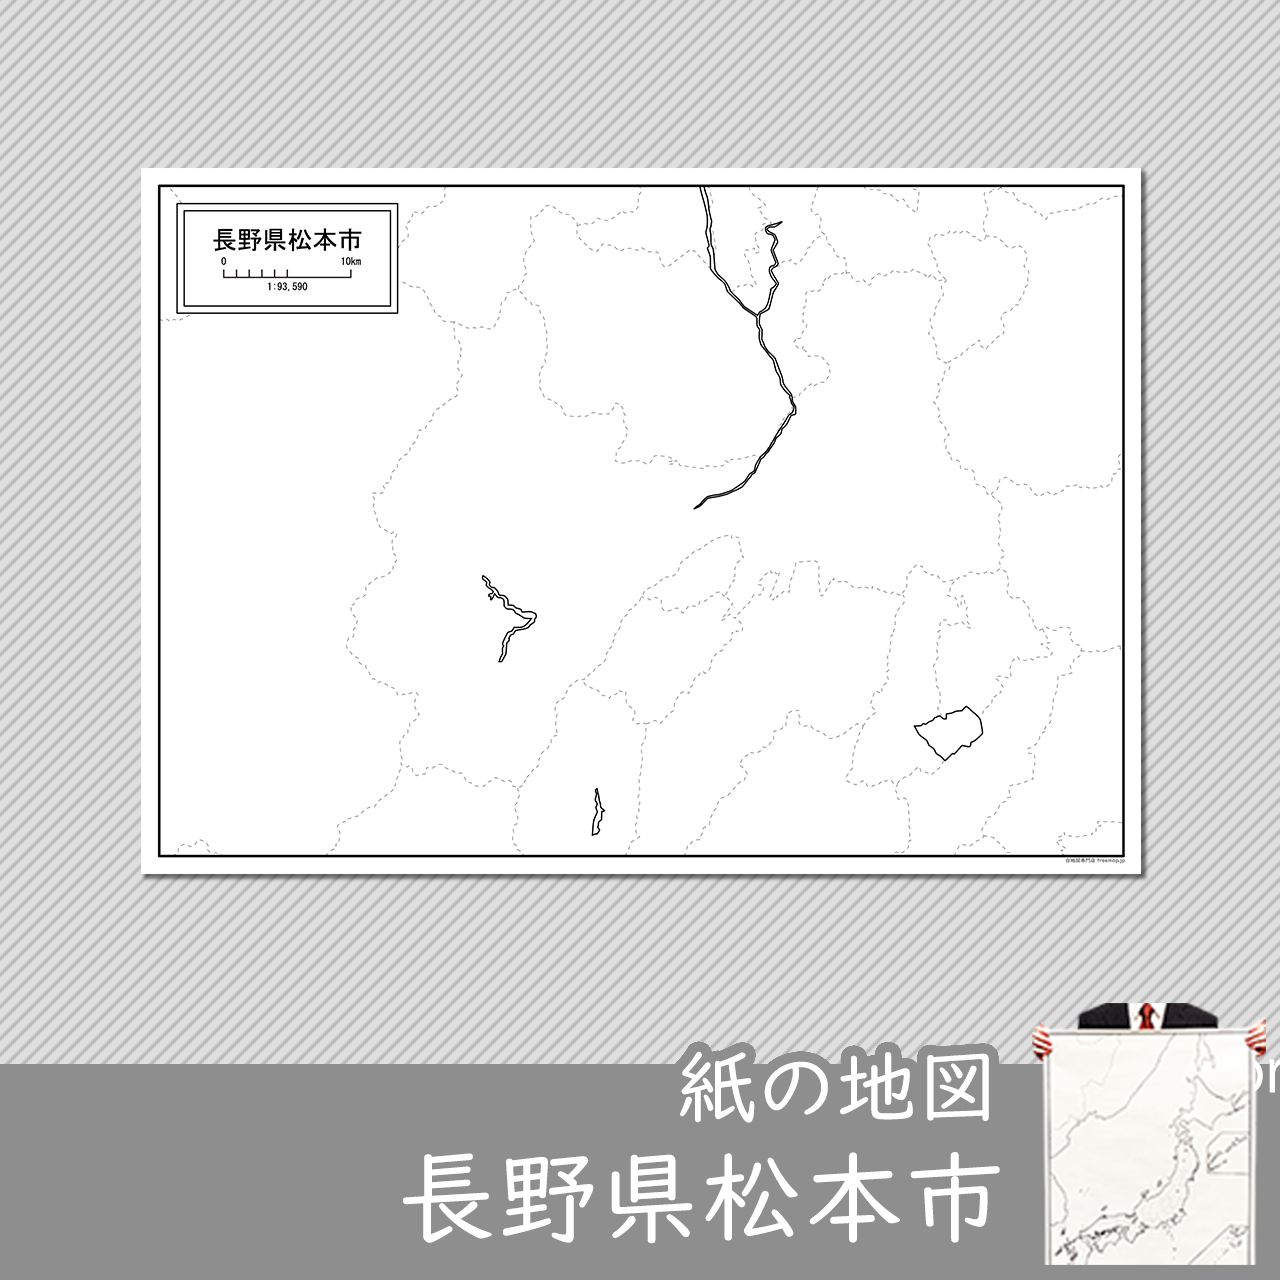 松本市の紙の白地図のサムネイル